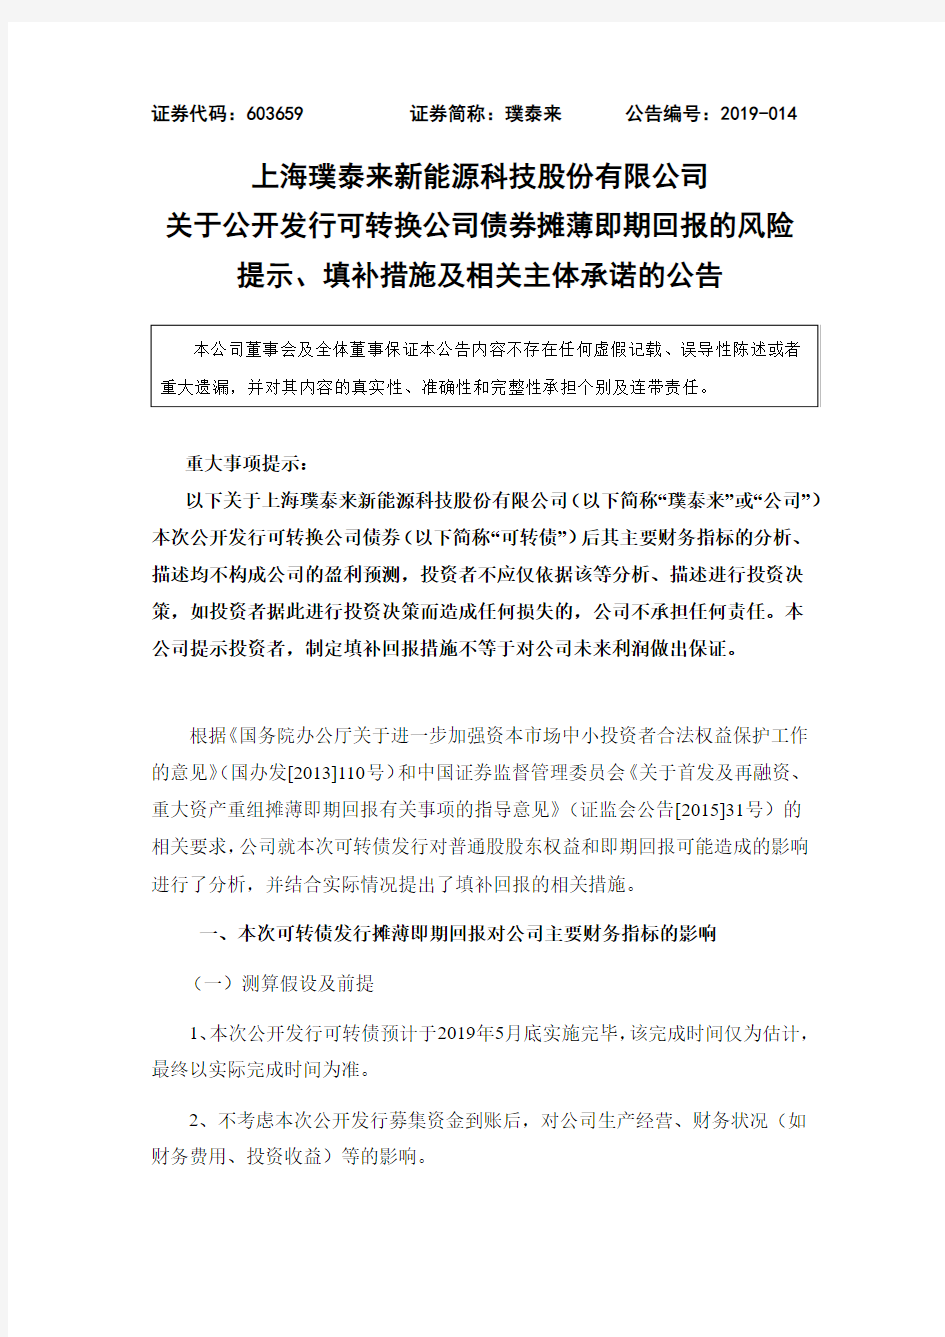 上海璞泰来新能源科技股份有限公司